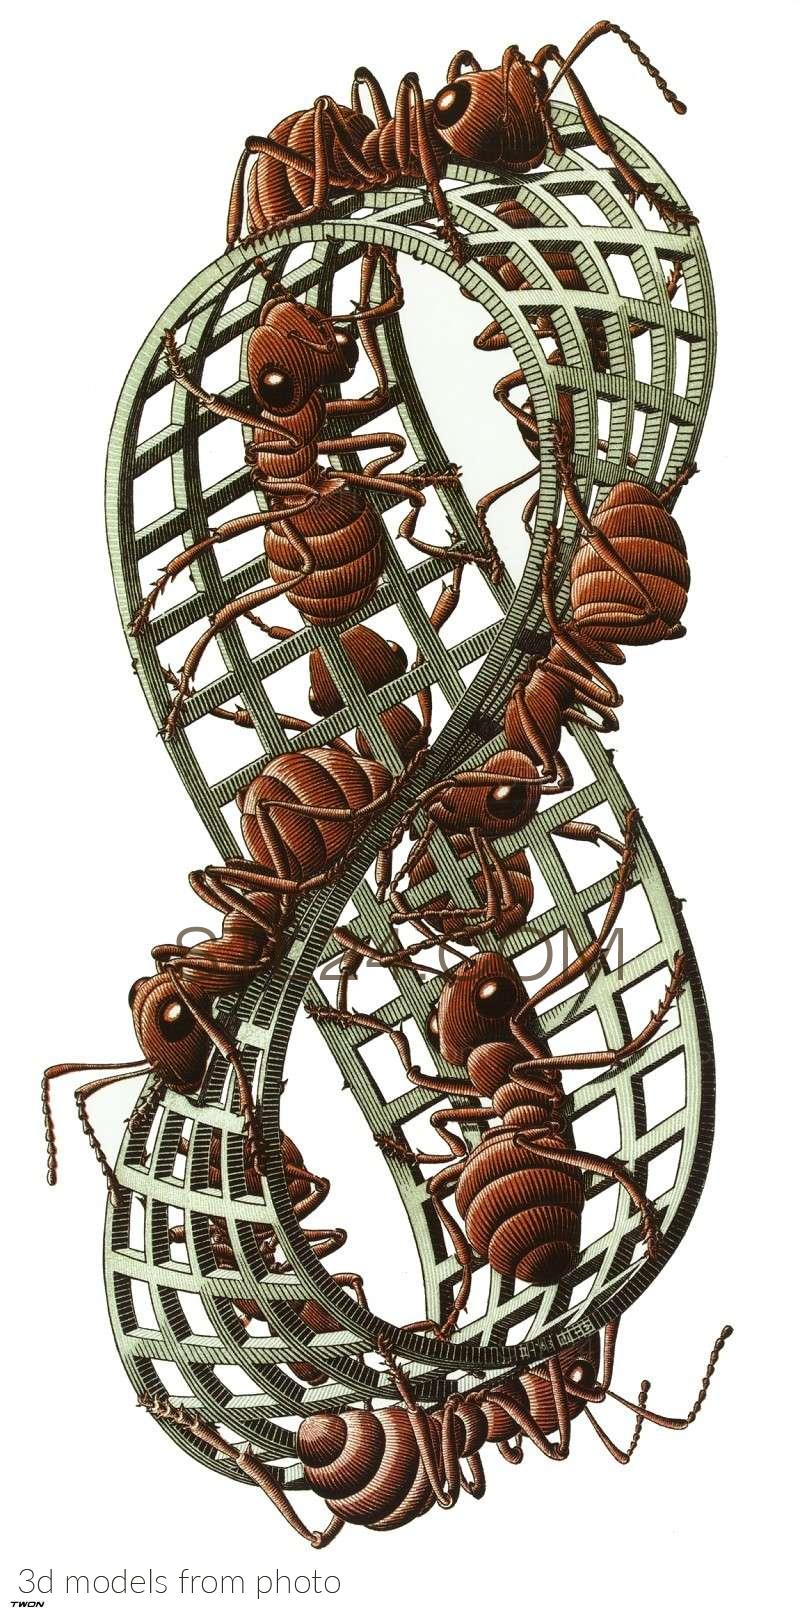 Maurits Escher (MAURITS ESCHER-0151 -  | 3D model 3DSMAX / OBJ / STL) 3D model for CNC machine